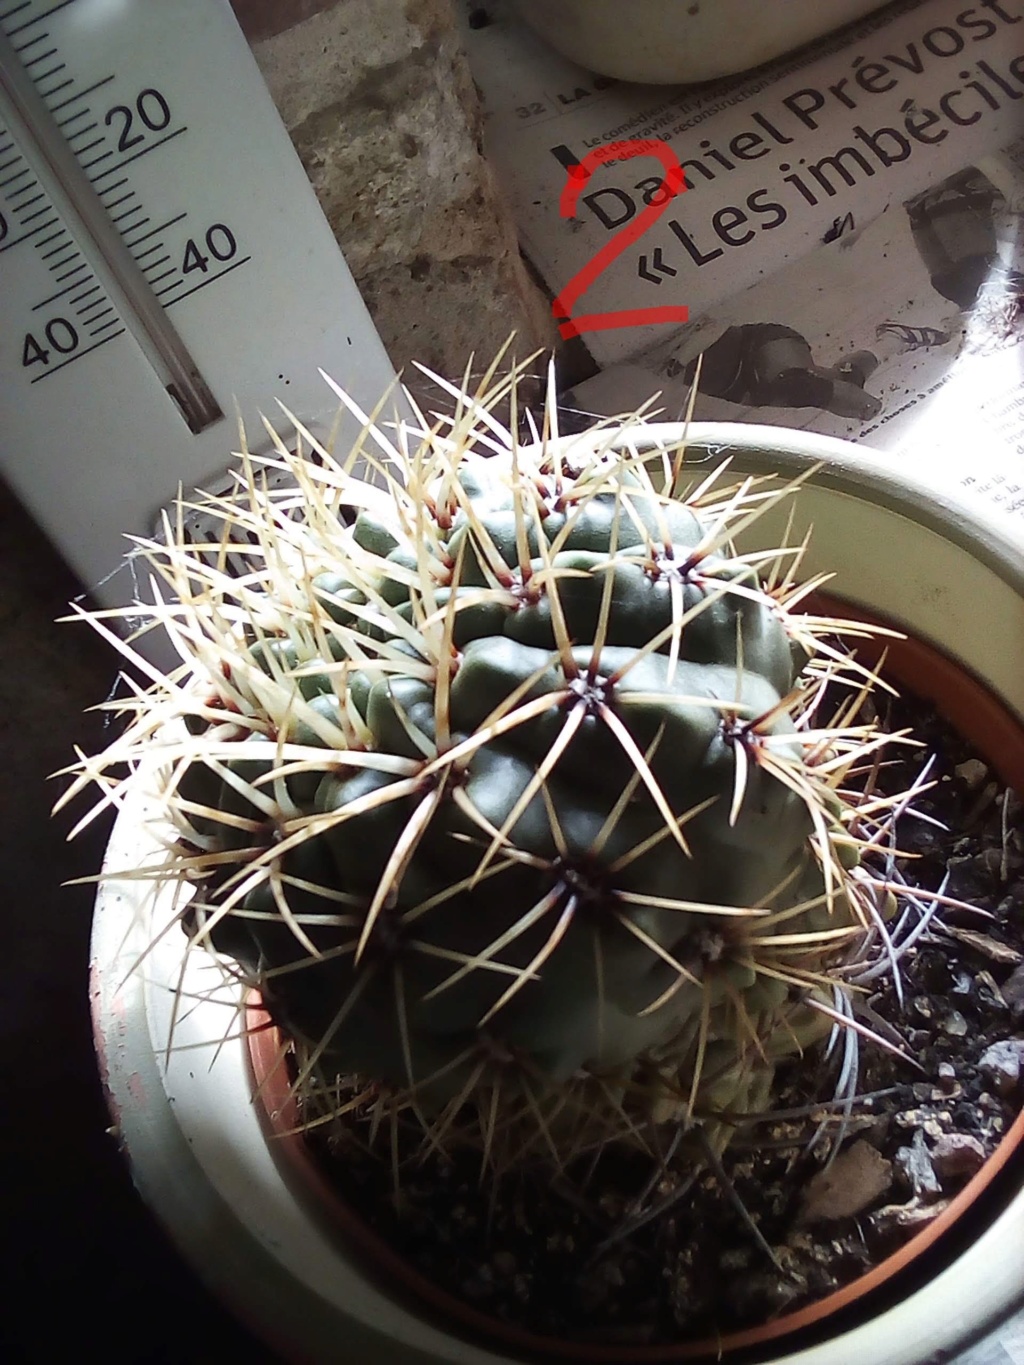 Besoin d'aide pour identifier les cactus/plantes grasses Img_2064